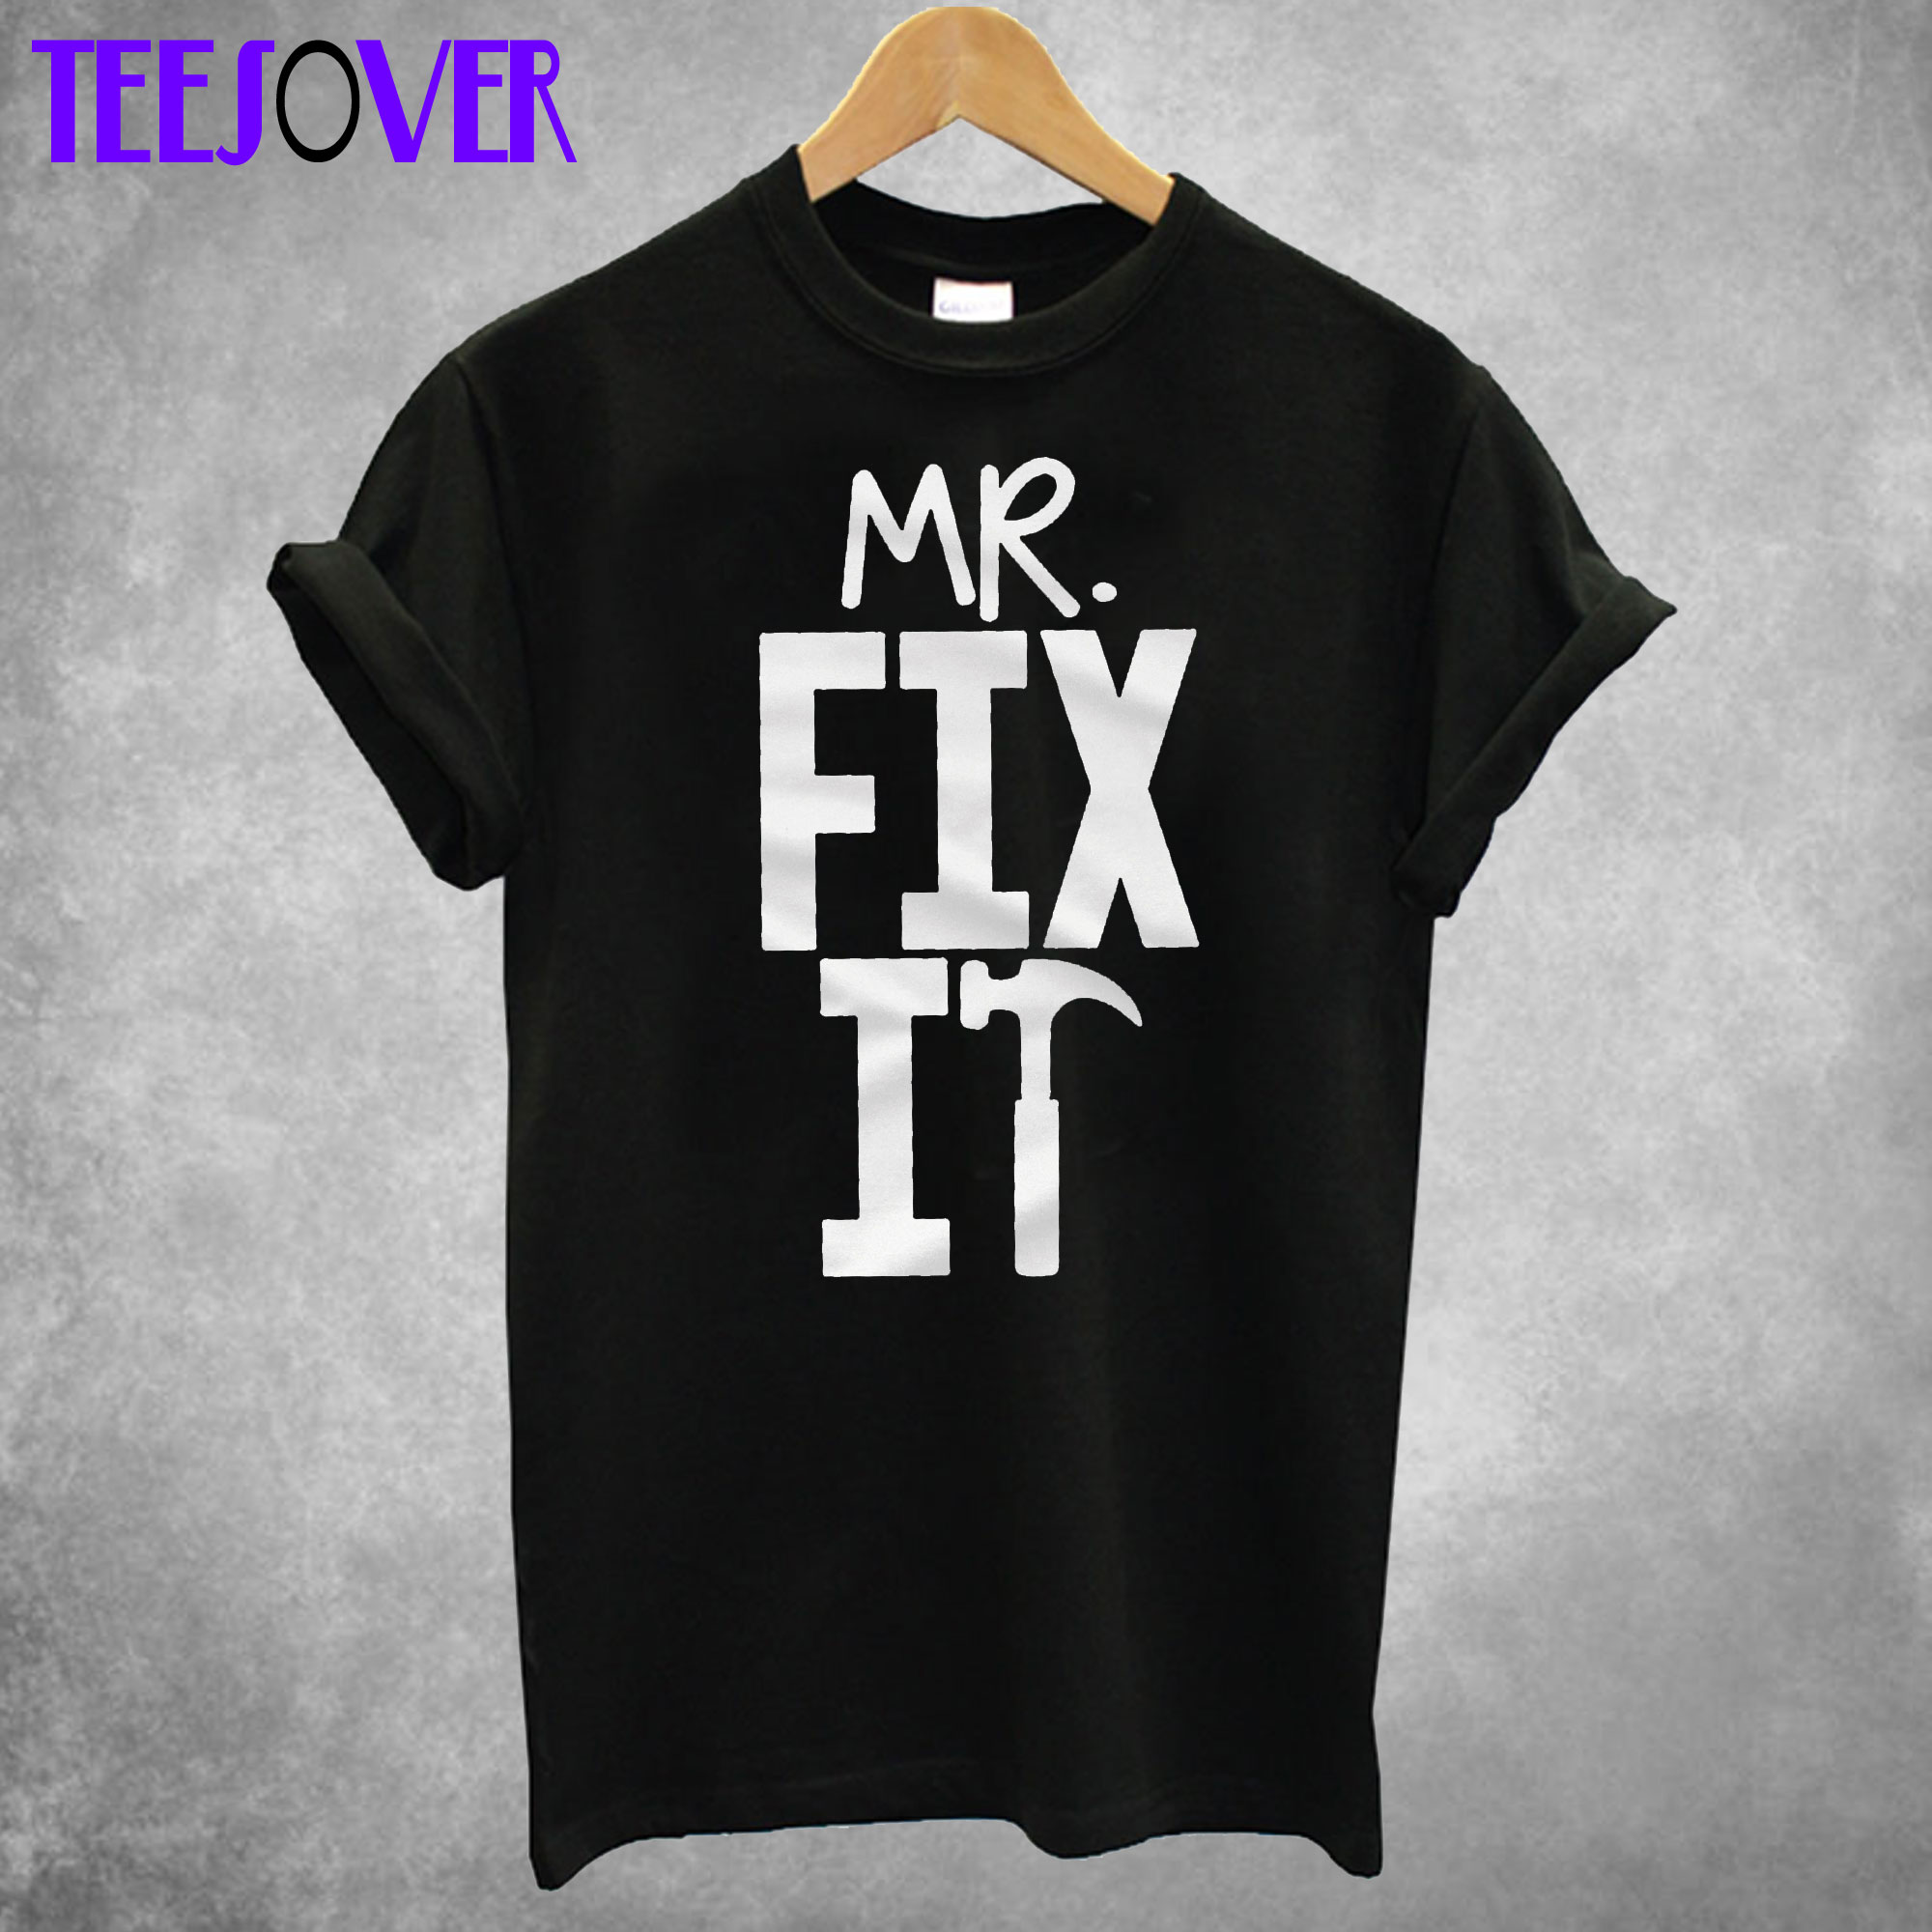 Mr. Fix It T shirt